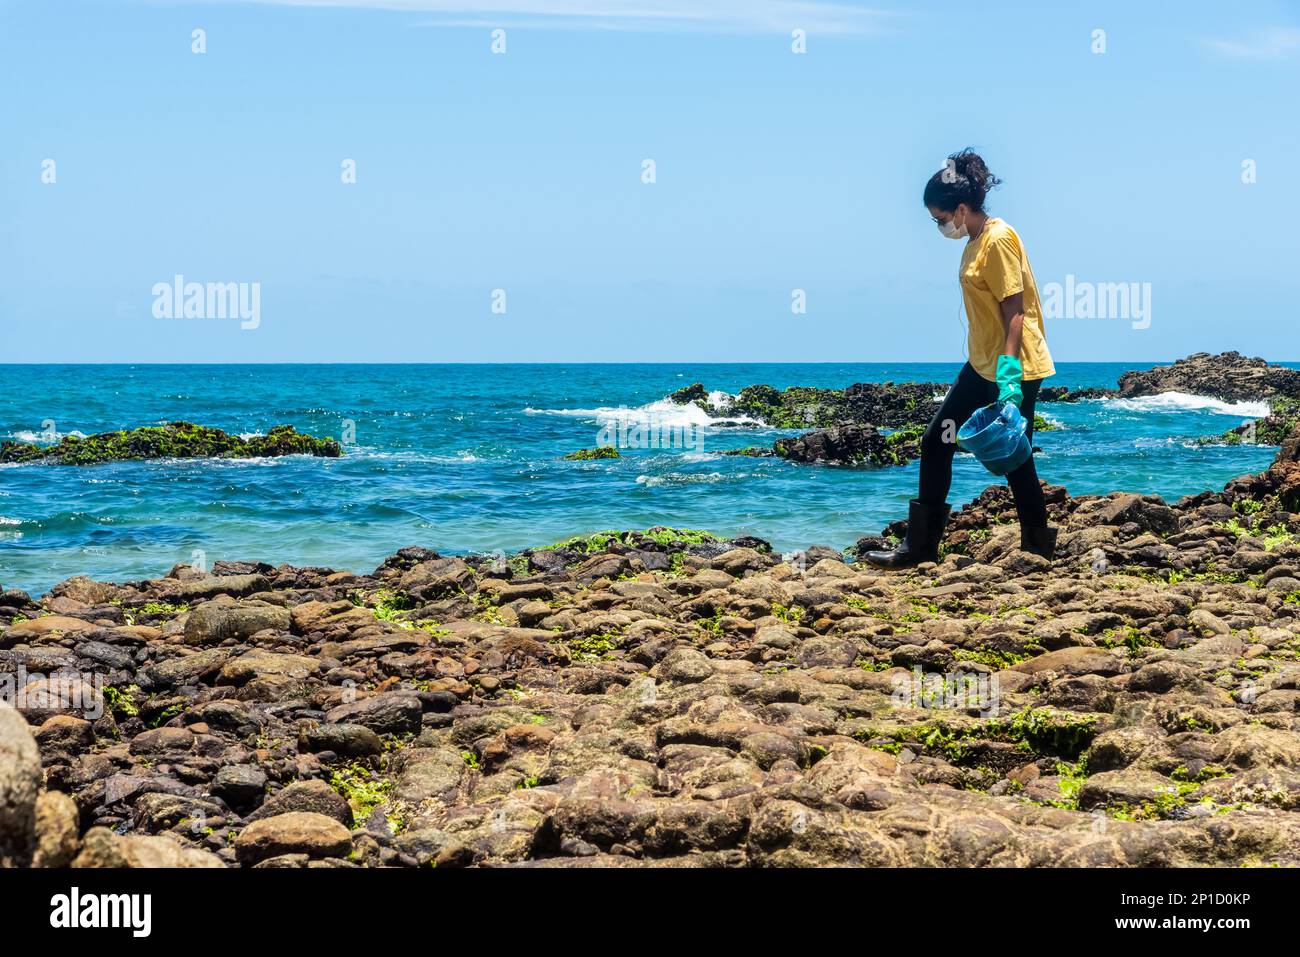 Salvador, Bahia, Brasilien - 27. Oktober 2019: Ein Freiwilliger wird gesehen, wie er den Strand von Rio Vermelho aufräumt, nachdem er von einem Schiff vor der brasilianischen Küste Öl verschüttet hatte. S Stockfoto